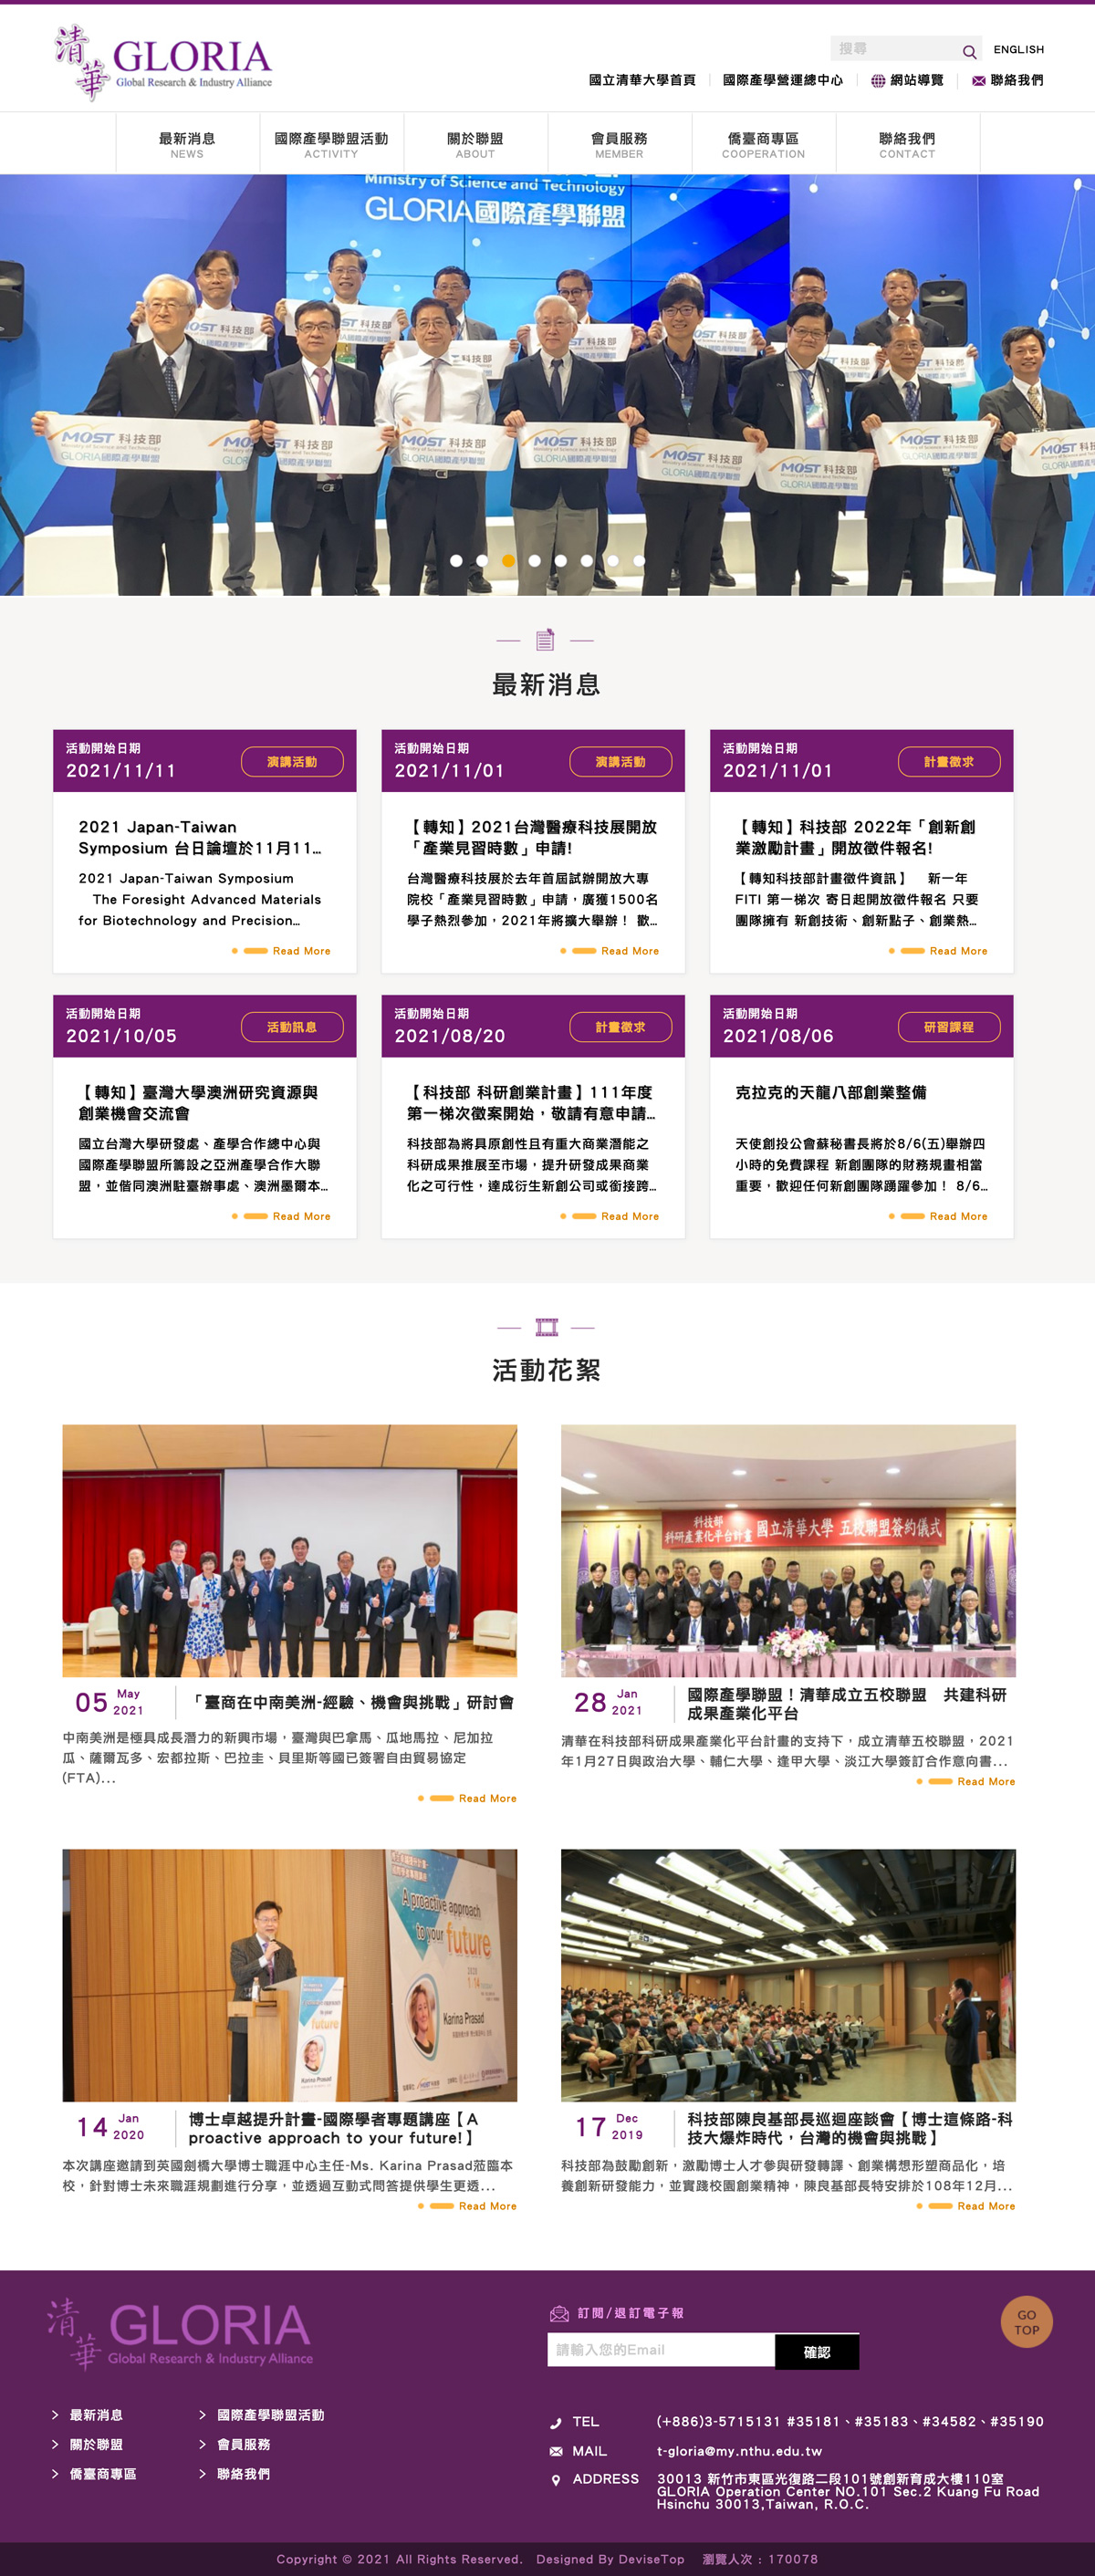 國立清華大學 - 國際產學聯盟計畫